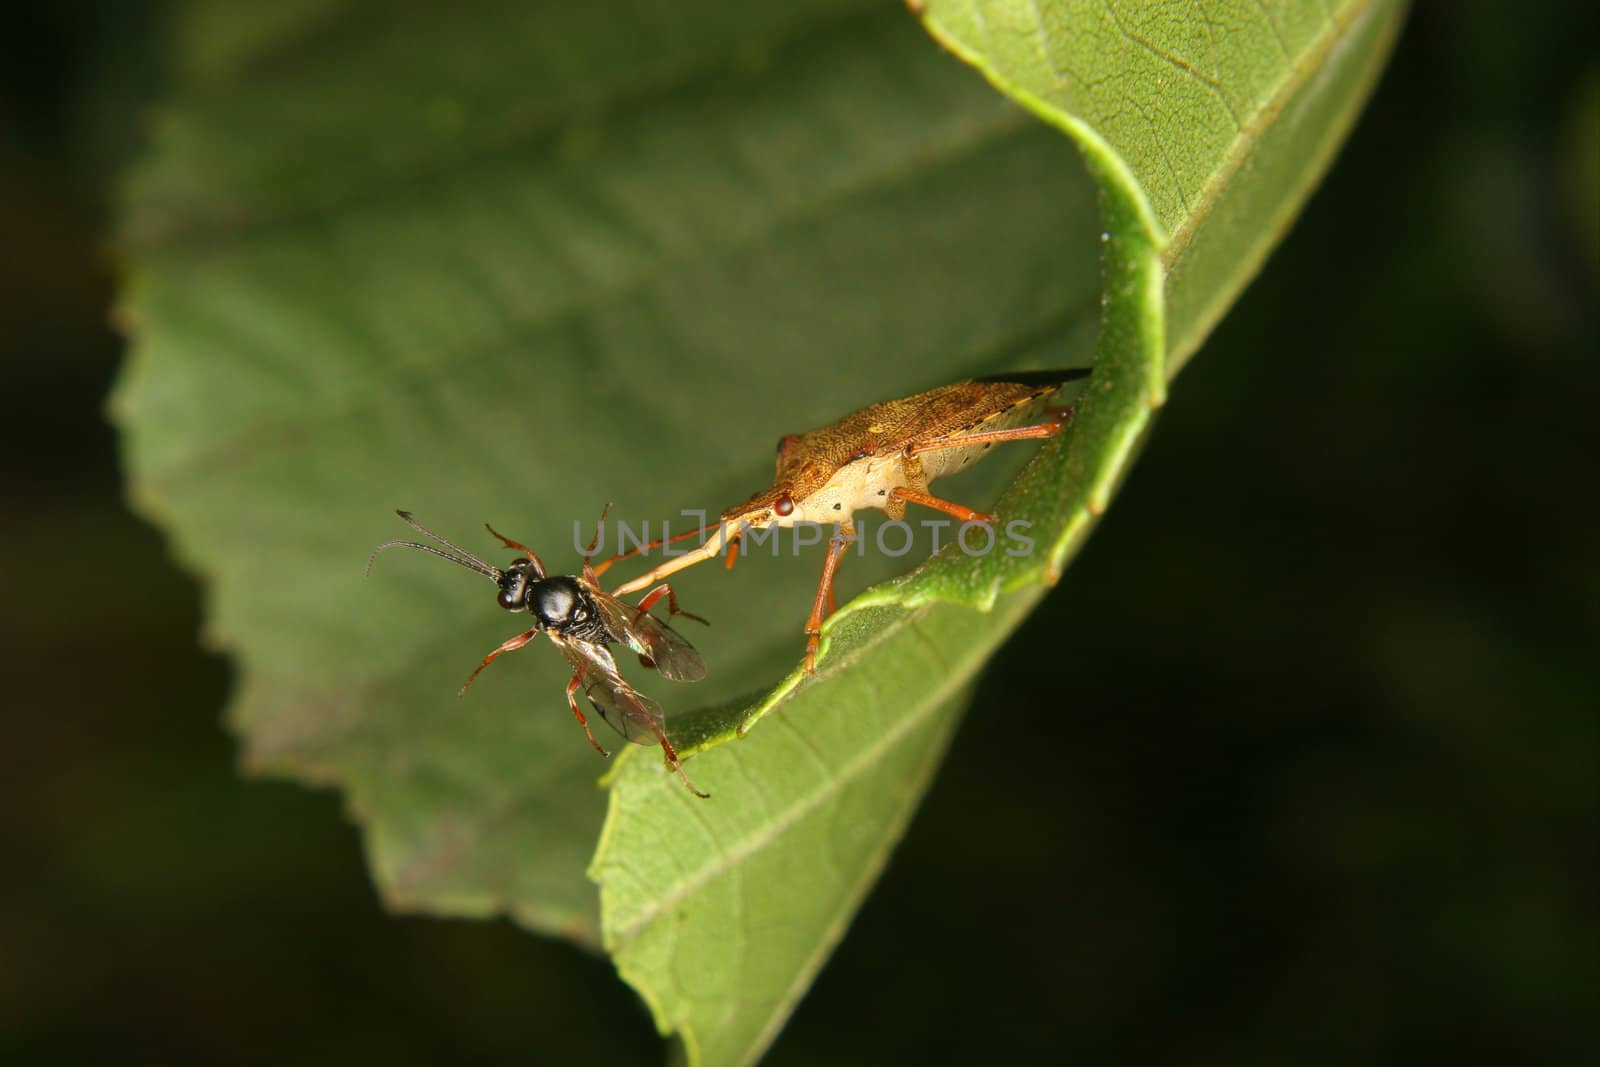 Assassin bug (Reduviidae) by tdietrich